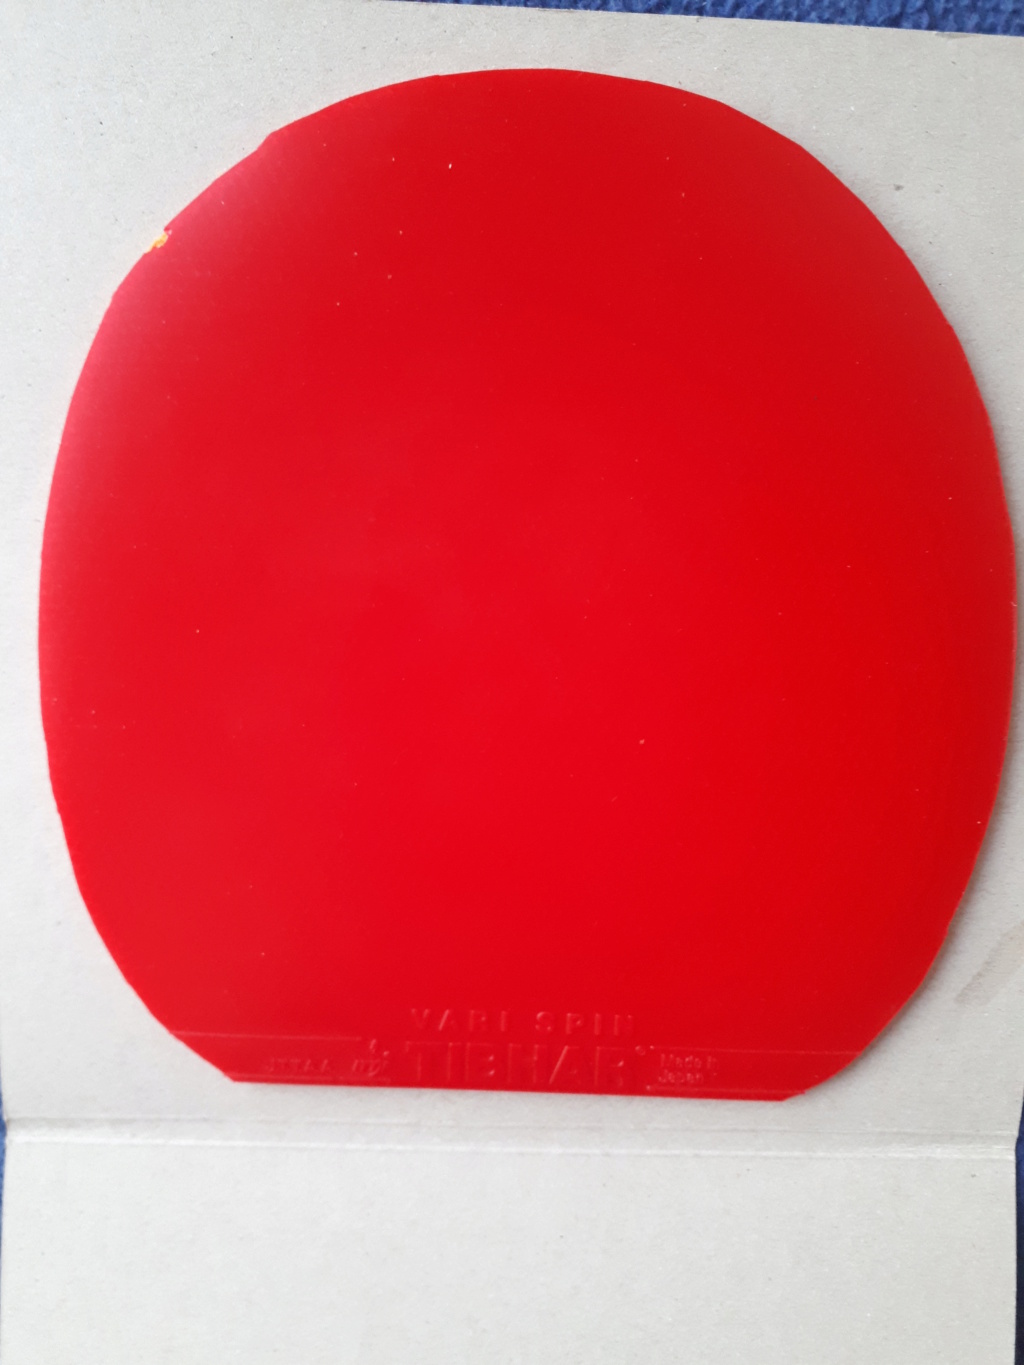 Vds Tibhar VARI SPIN, rouge, 1,8 mm, comme neuf, 17 € fdpi 20211214